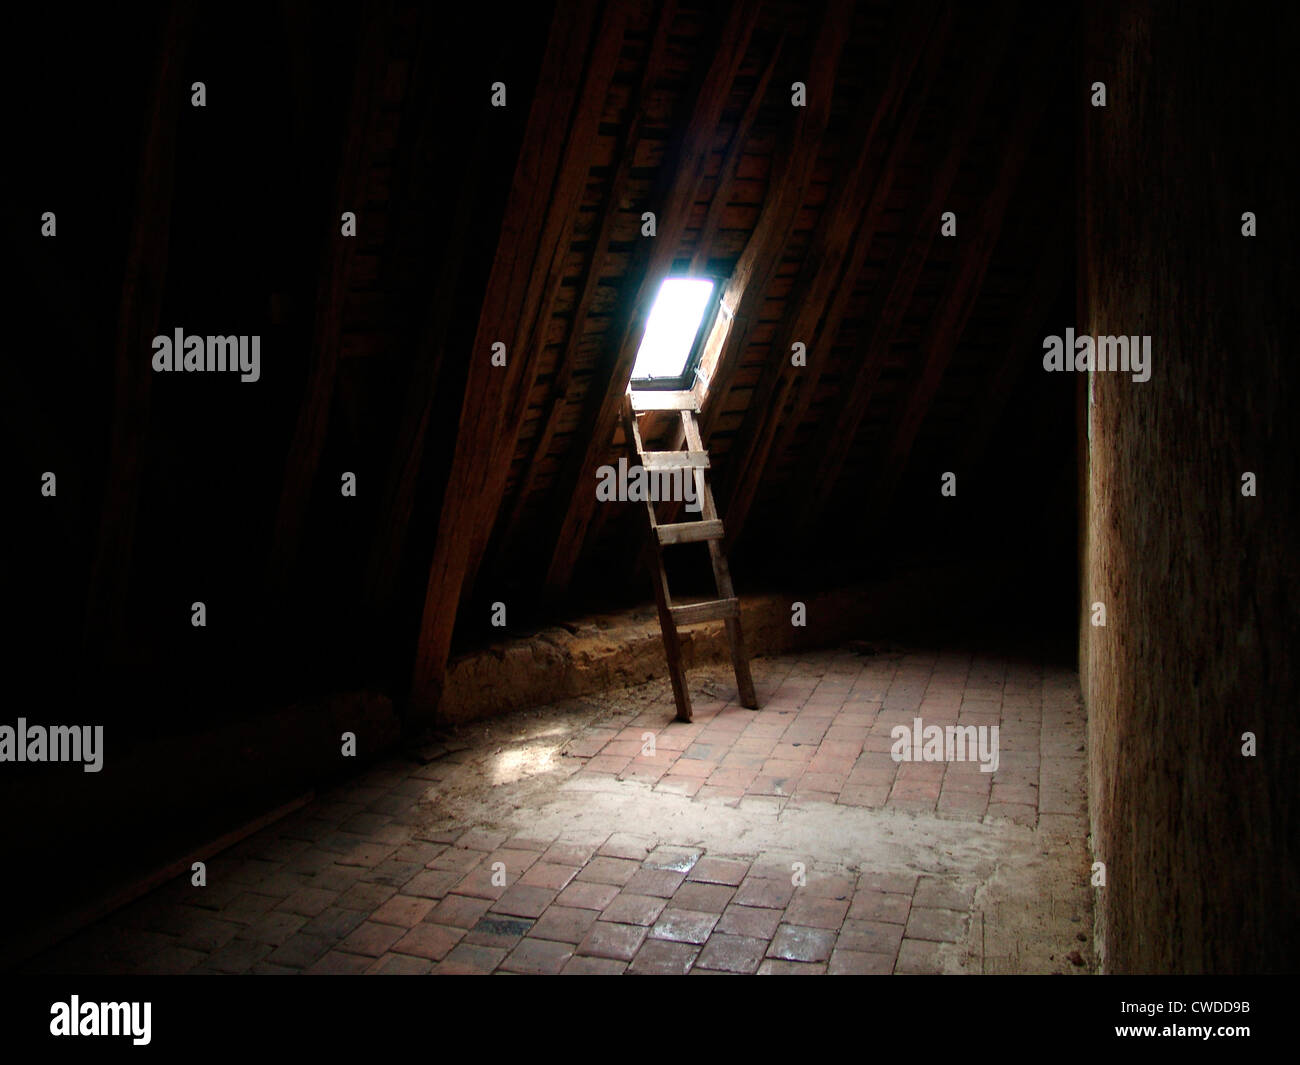 Leiter, Dachboden, Dachfenster Stockfotografie - Alamy